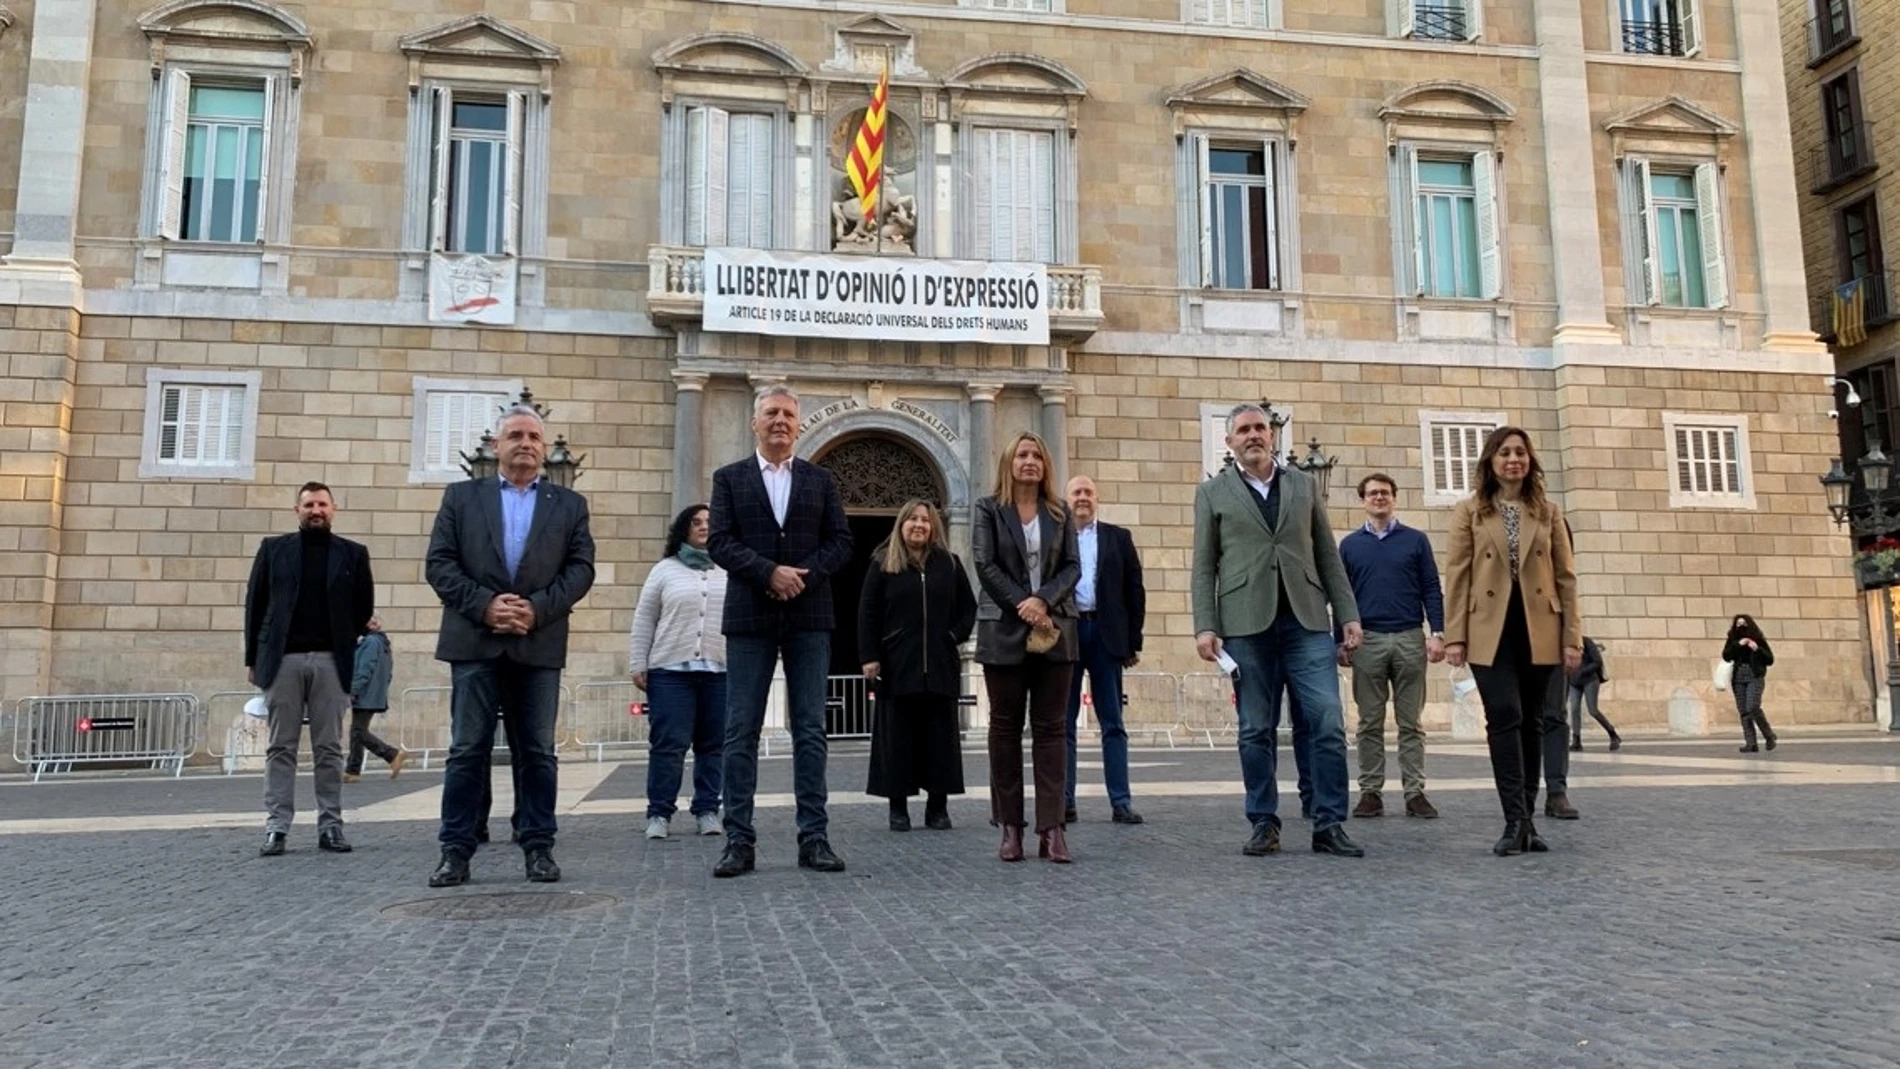 Valents ha anunciado que incopora a los exdiputados de Cs Jean Castel y Jorge Soler como coordinadores territoriales del partido en Girona y Lleida.